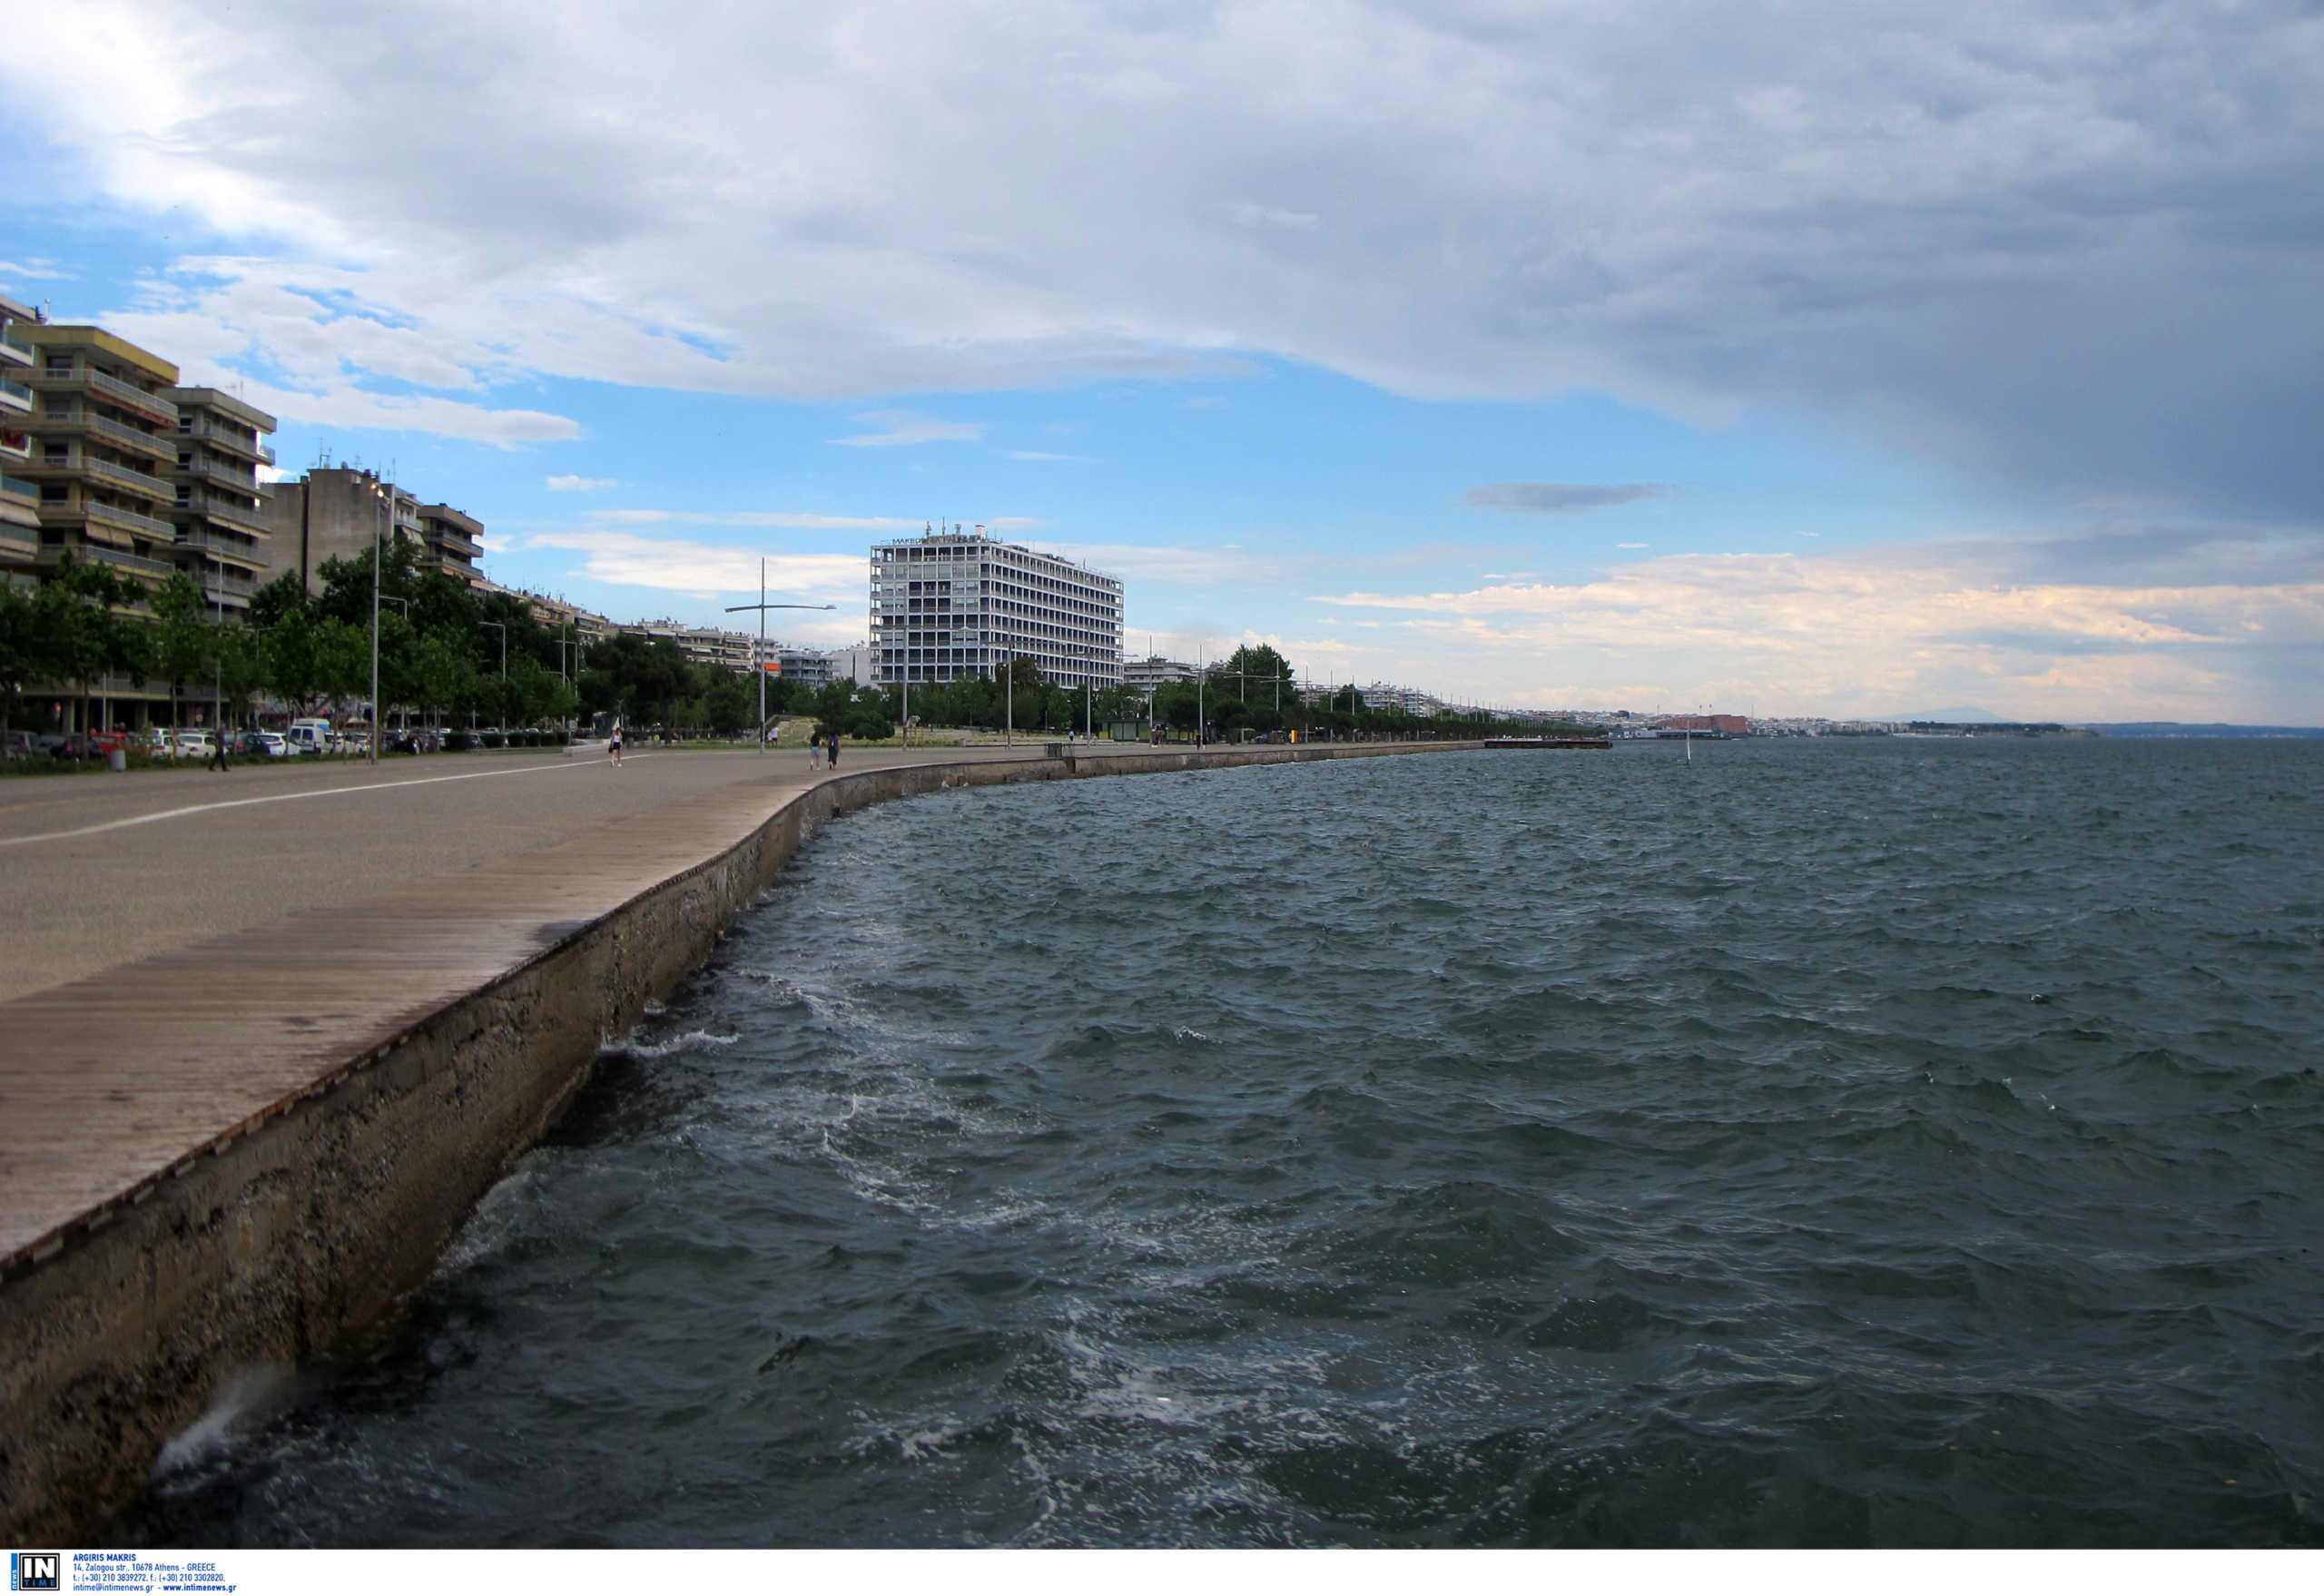 Δήμος Θεσσαλονίκης: Κατέθεσε μήνυση κατά παντός υπευθύνου για τους νέους βανδαλισμούς στην παραλία